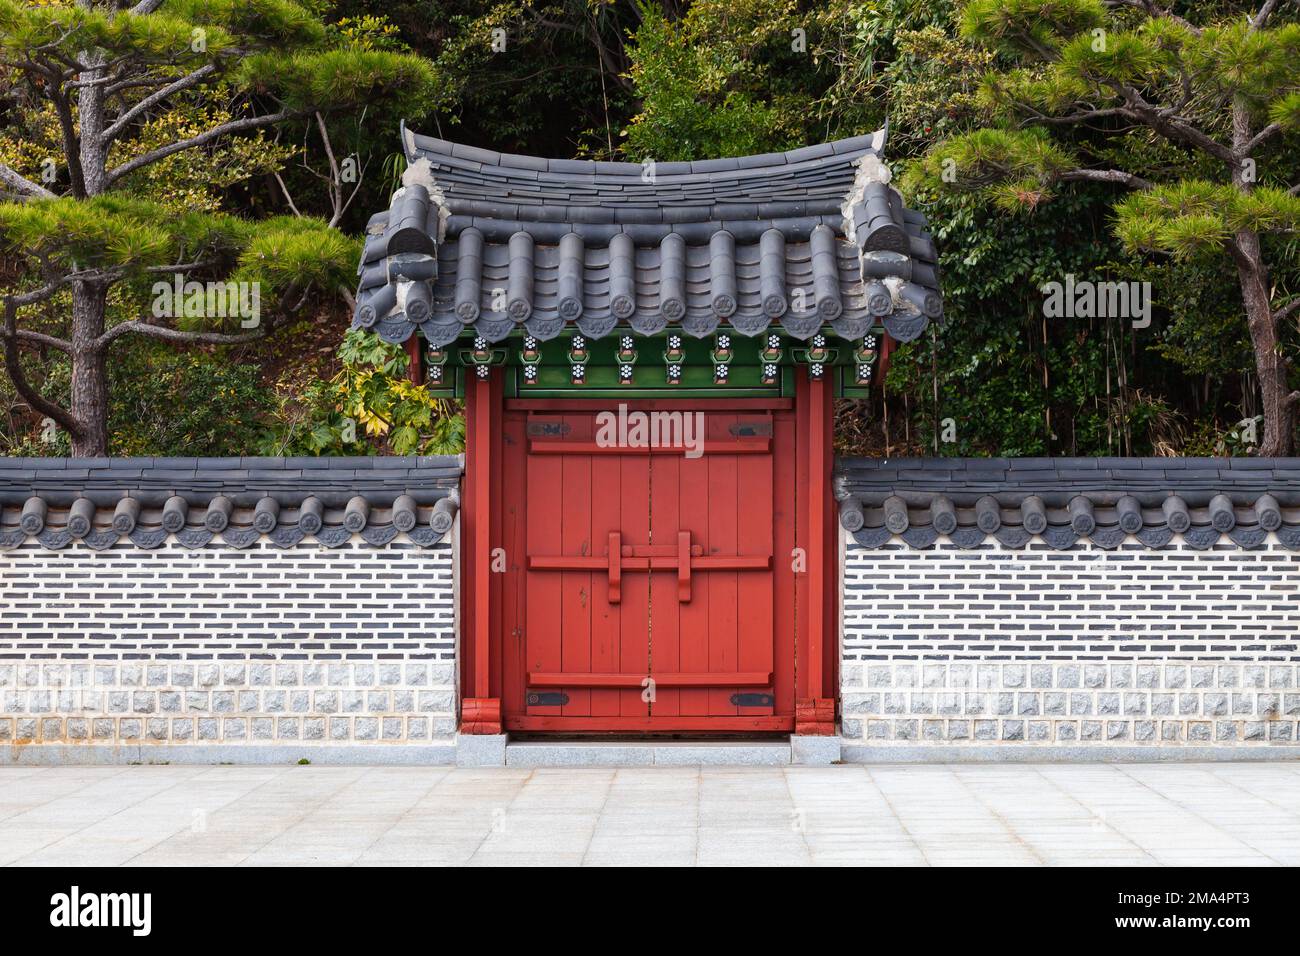 Portail en bois rouge sous toit carrelé. Architecture orientale traditionnelle dans le parc public de Busan, Corée du Sud Banque D'Images